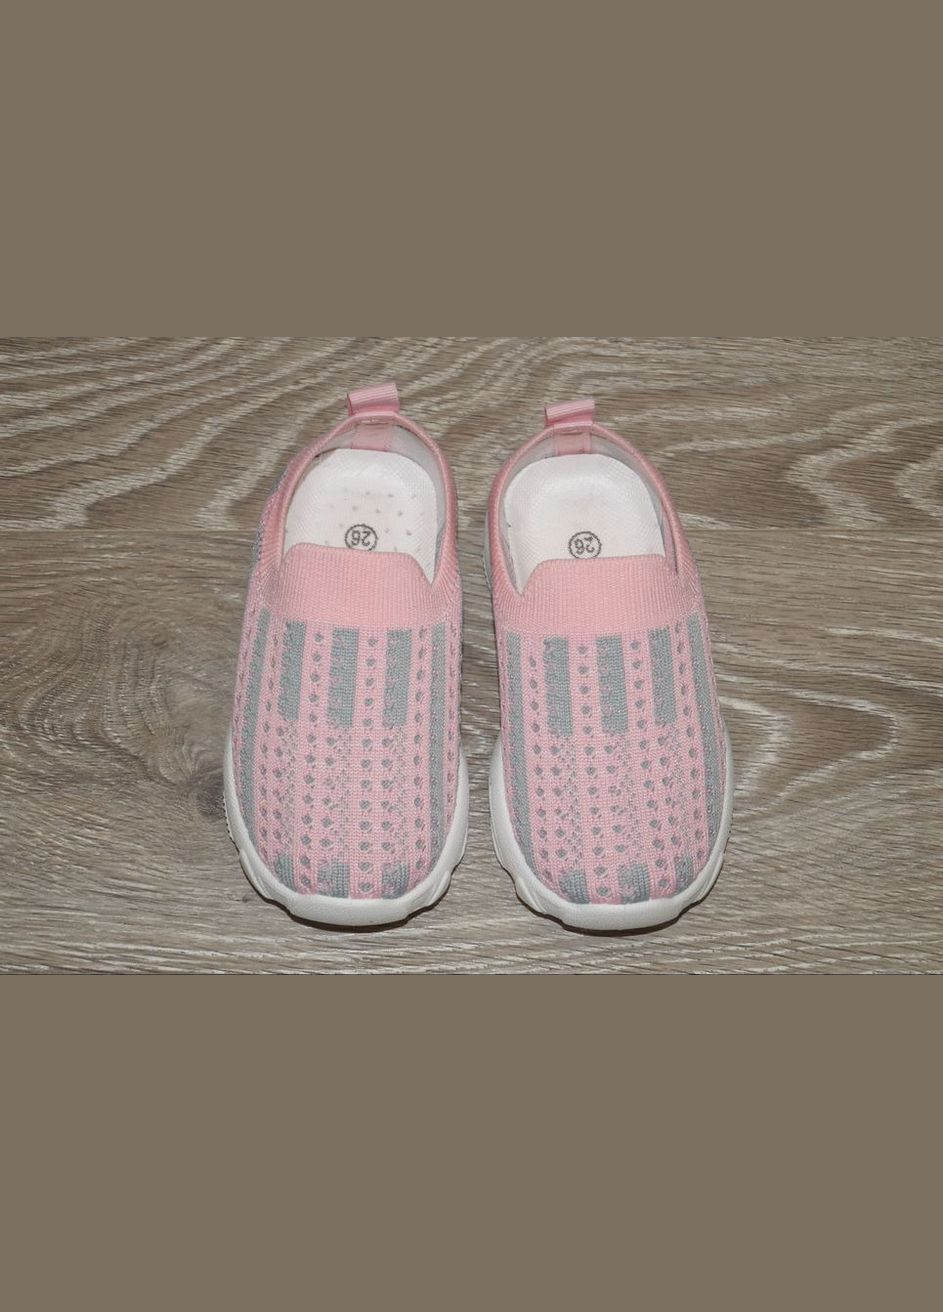 Розовые летние кроссовки текстильные для девочки летние розовые М.Мичи